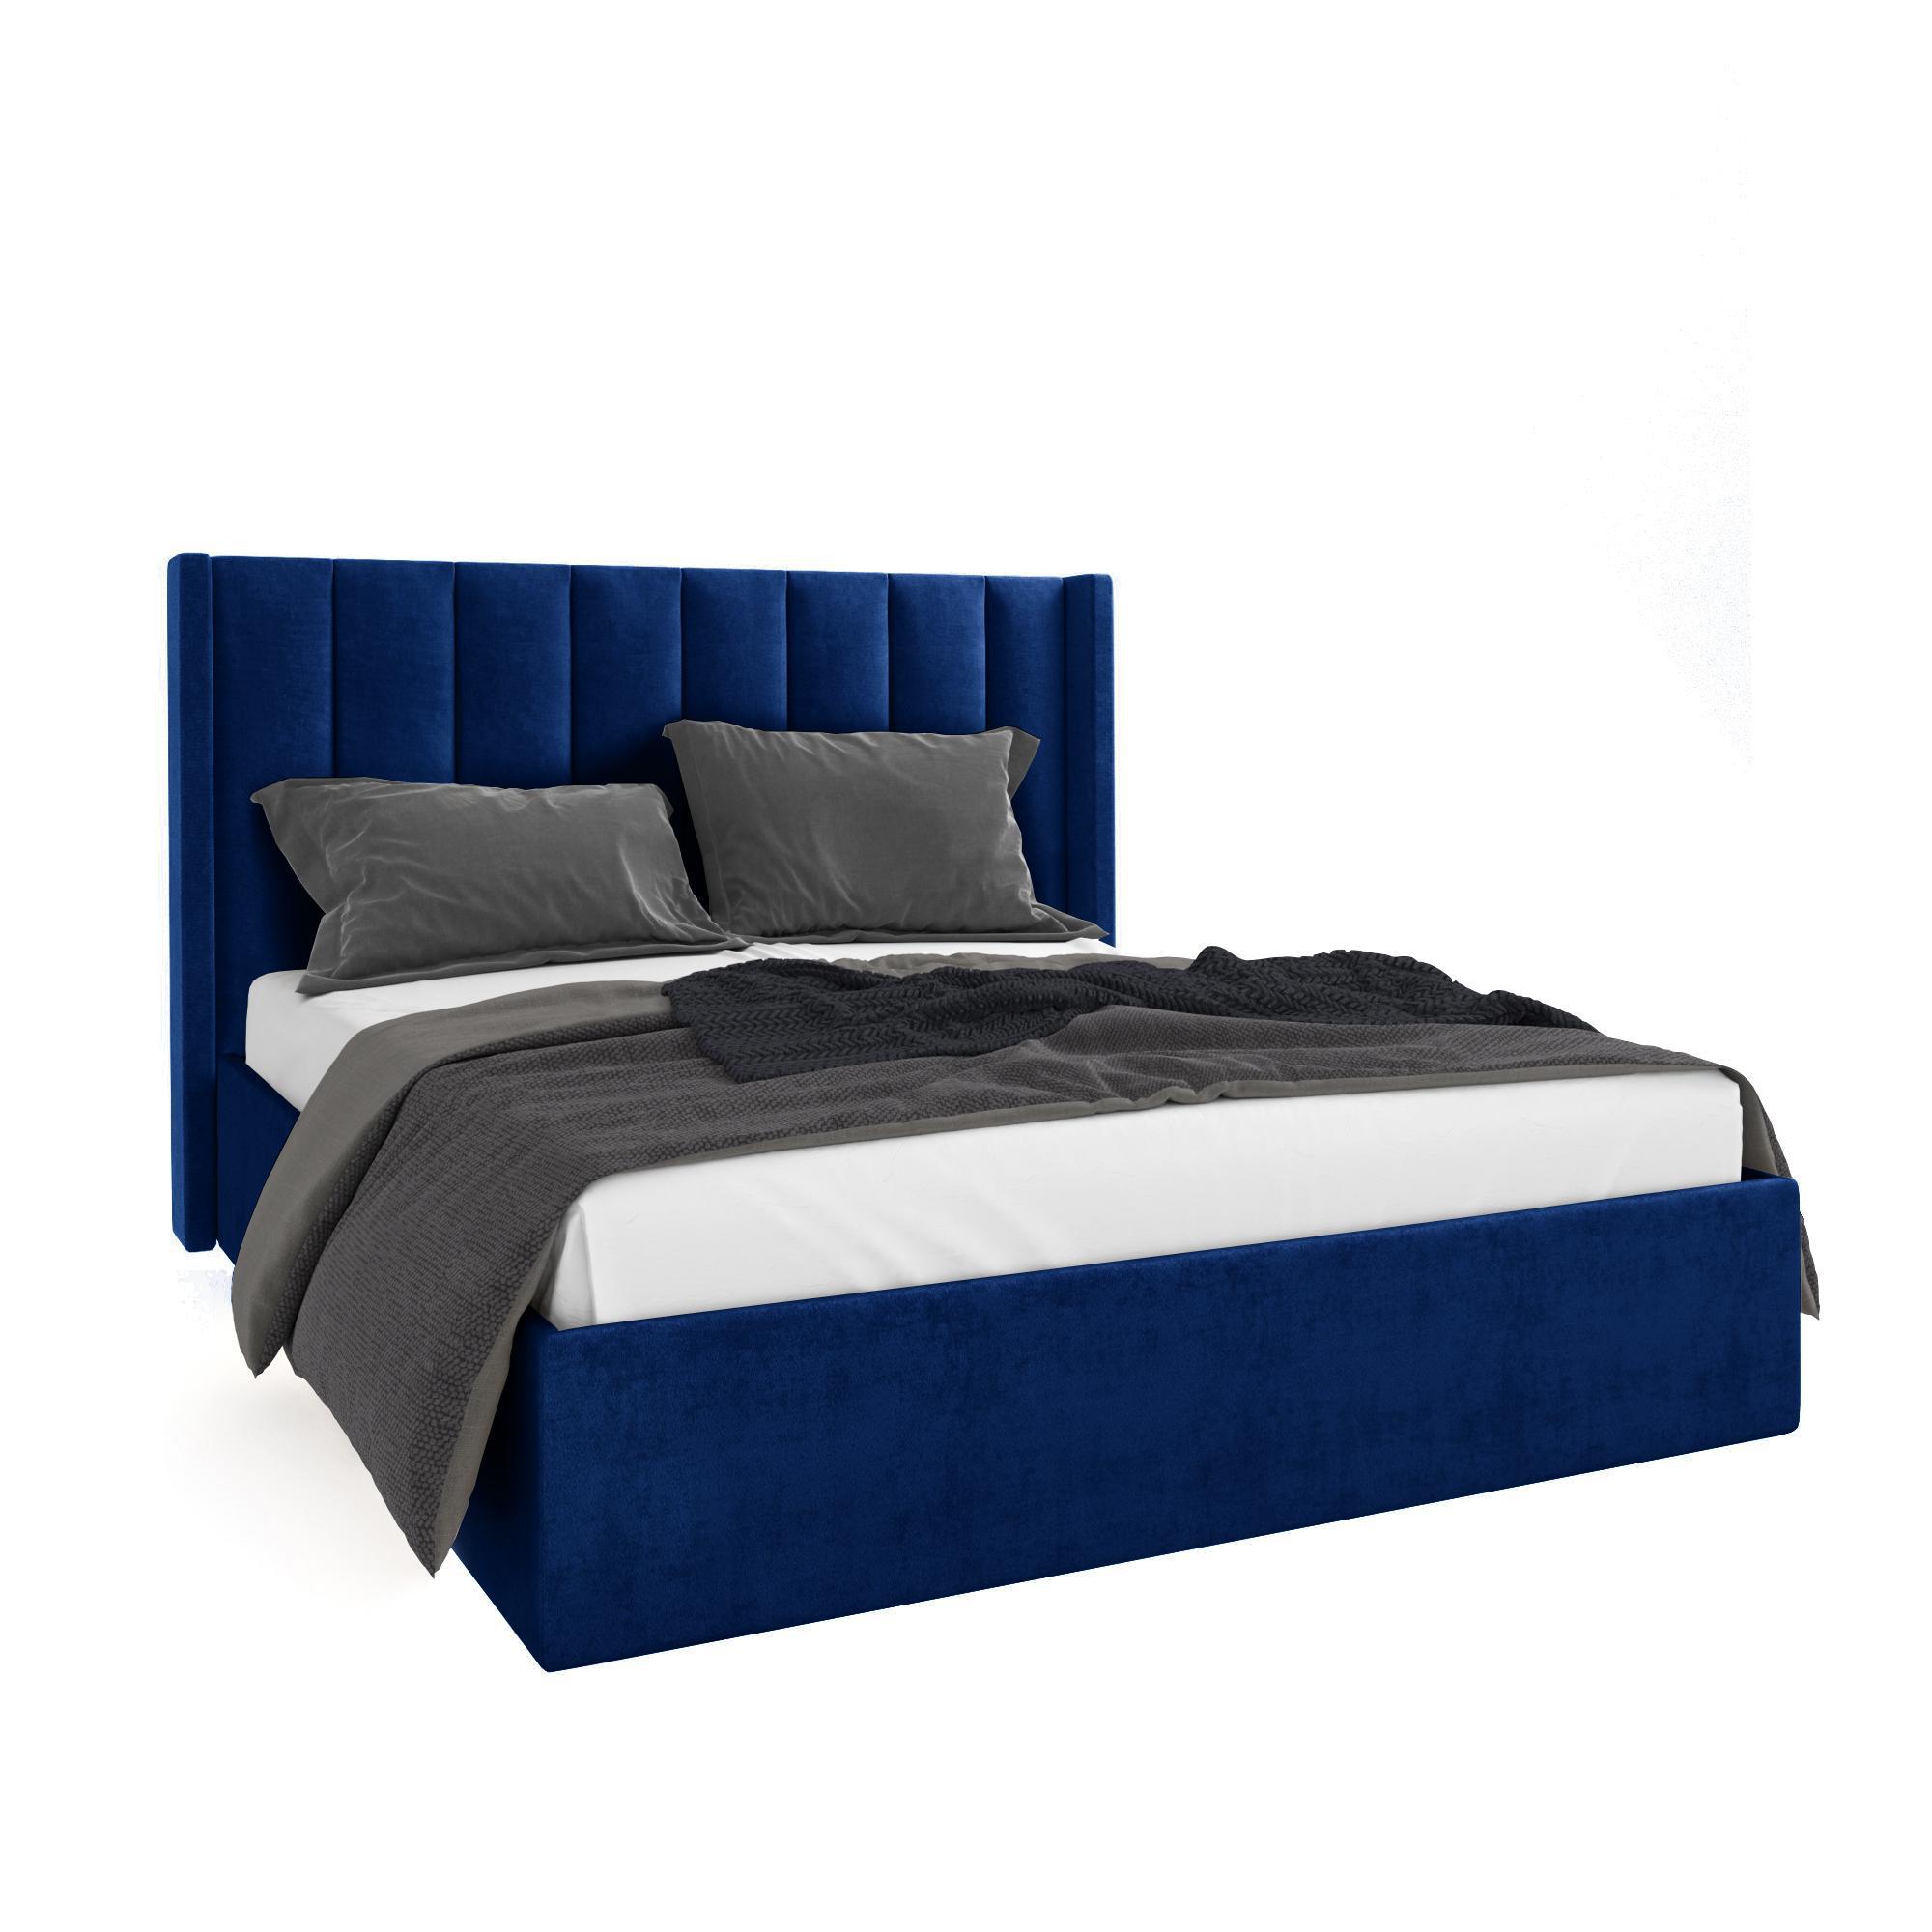 Кровать Жаклиз синяя 200х200 изображение товара